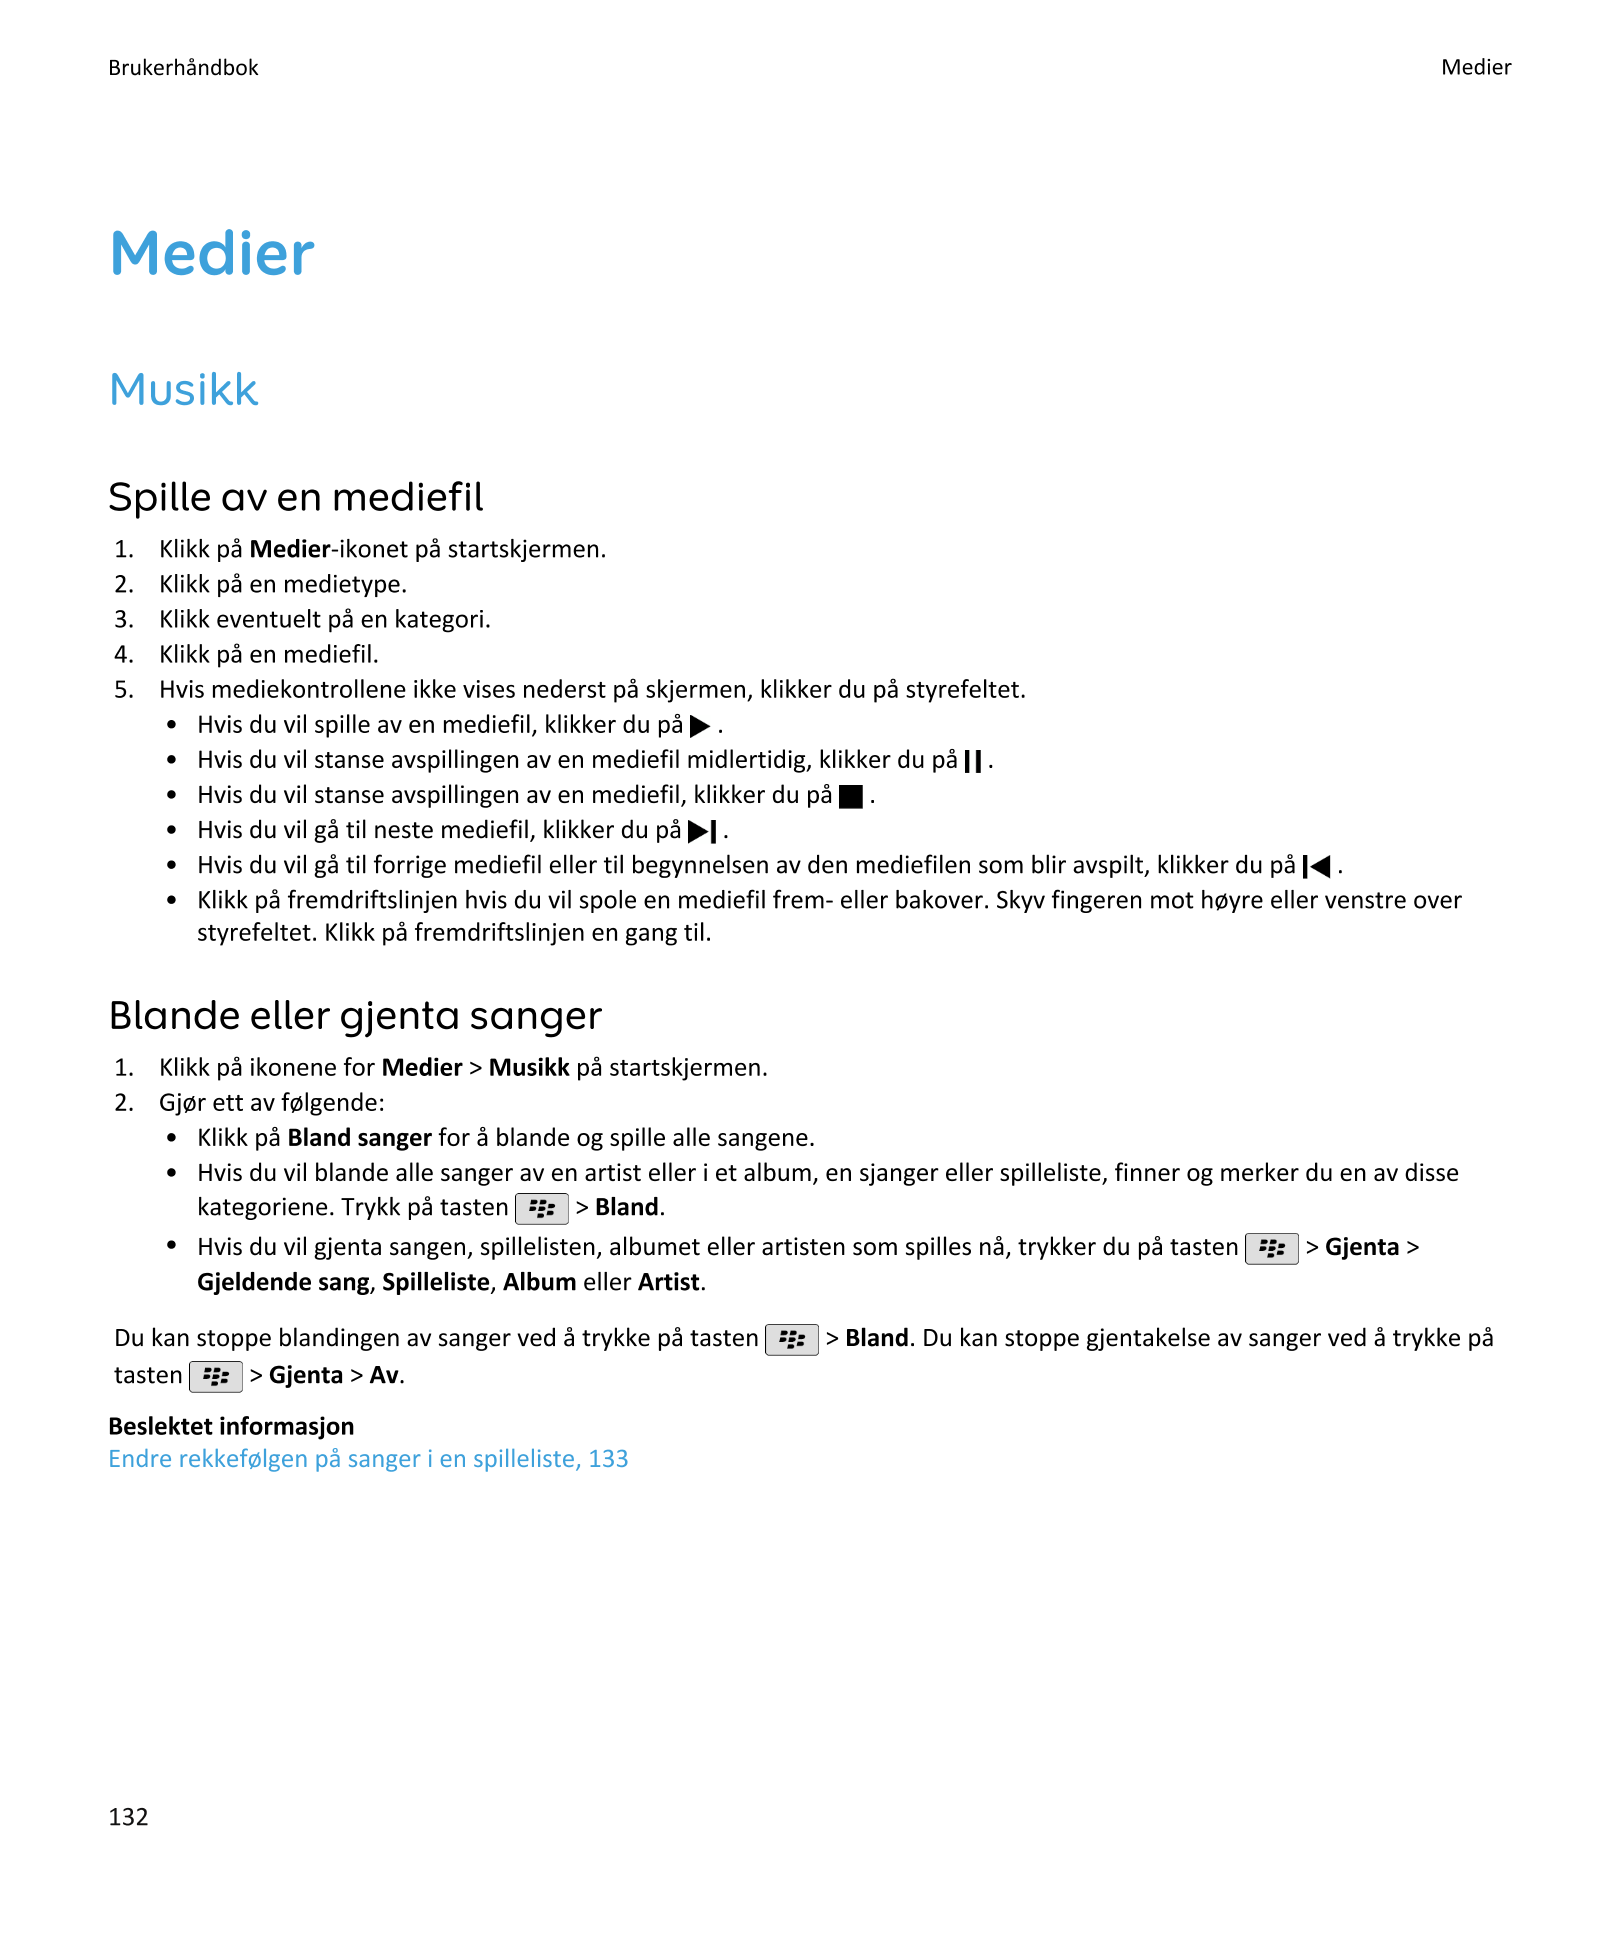 Brukerhåndbok Medier
Medier
Musikk
Spille av en mediefil
1.    Klikk på Medier-ikonet på startskjermen.
2.    Klikk på en mediet